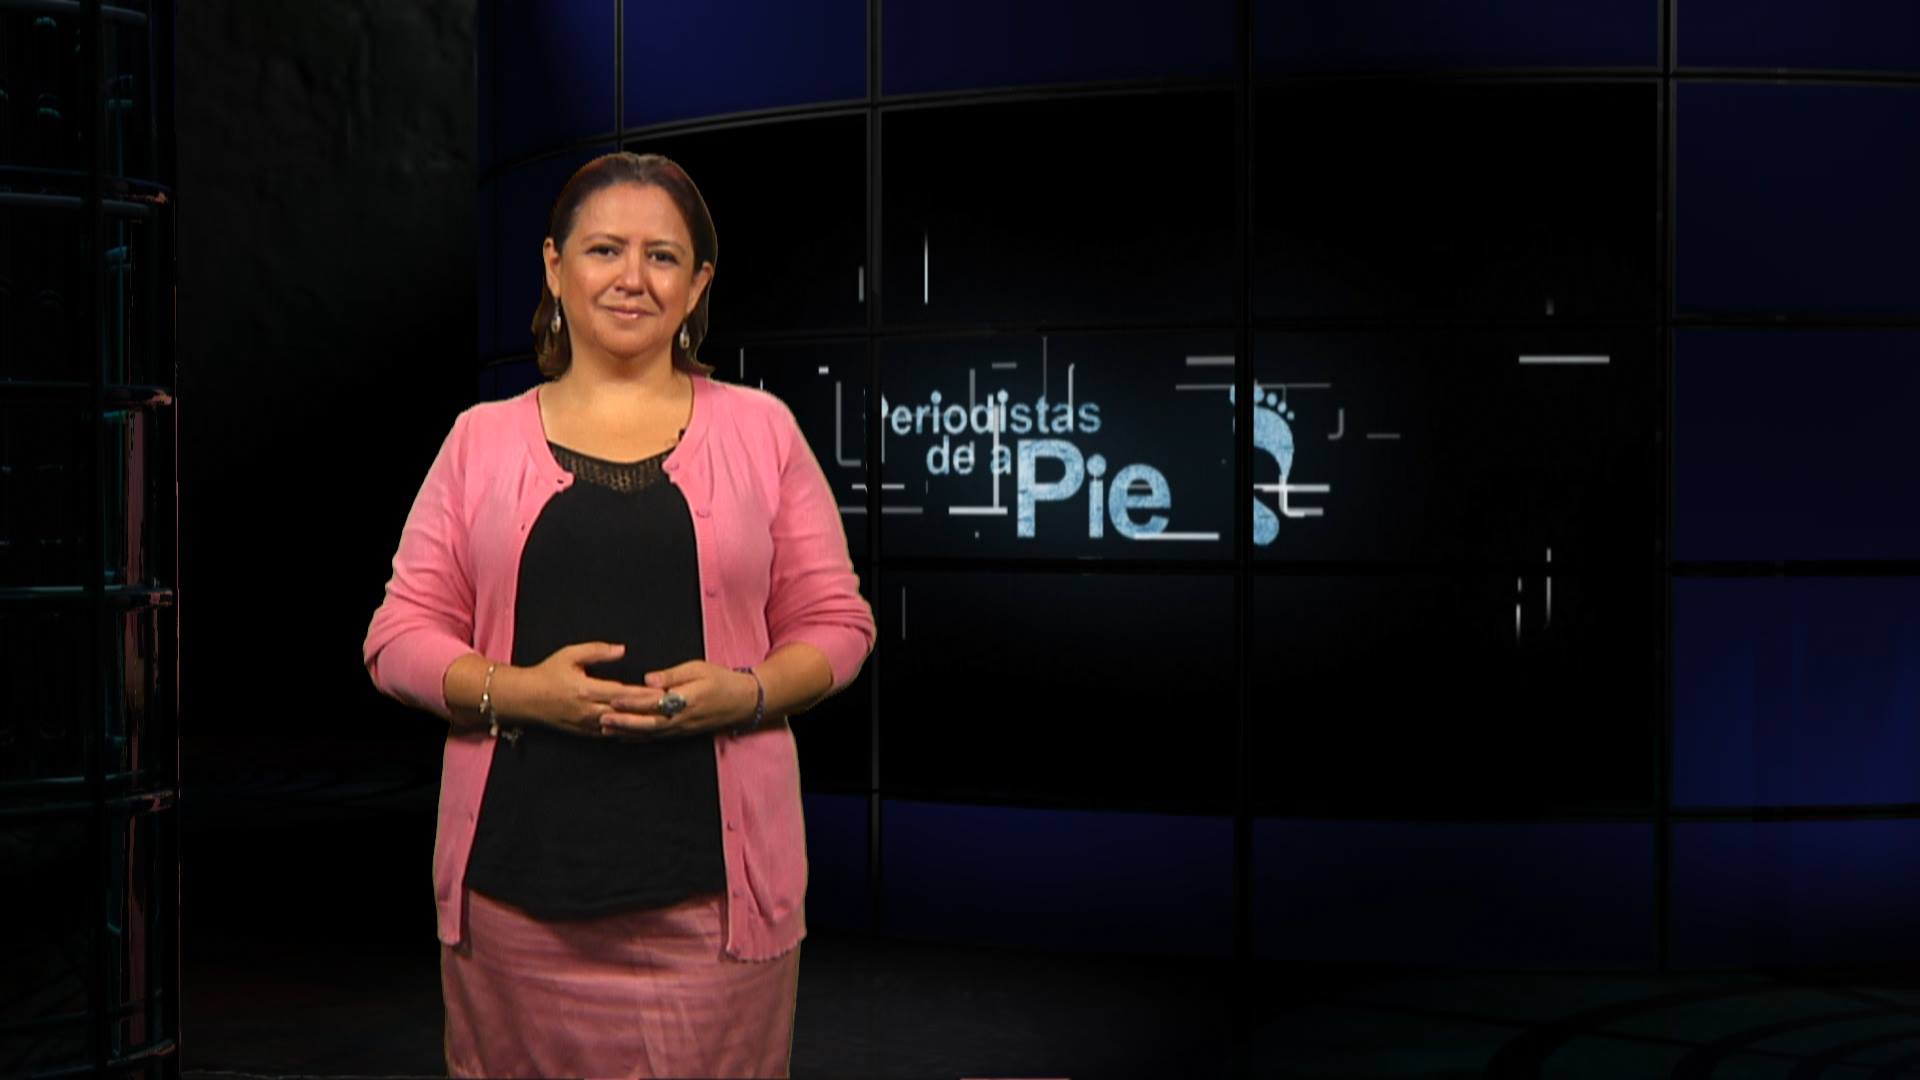 Periodistas de a Pie - Batallas por el futuro - 13/09/2018